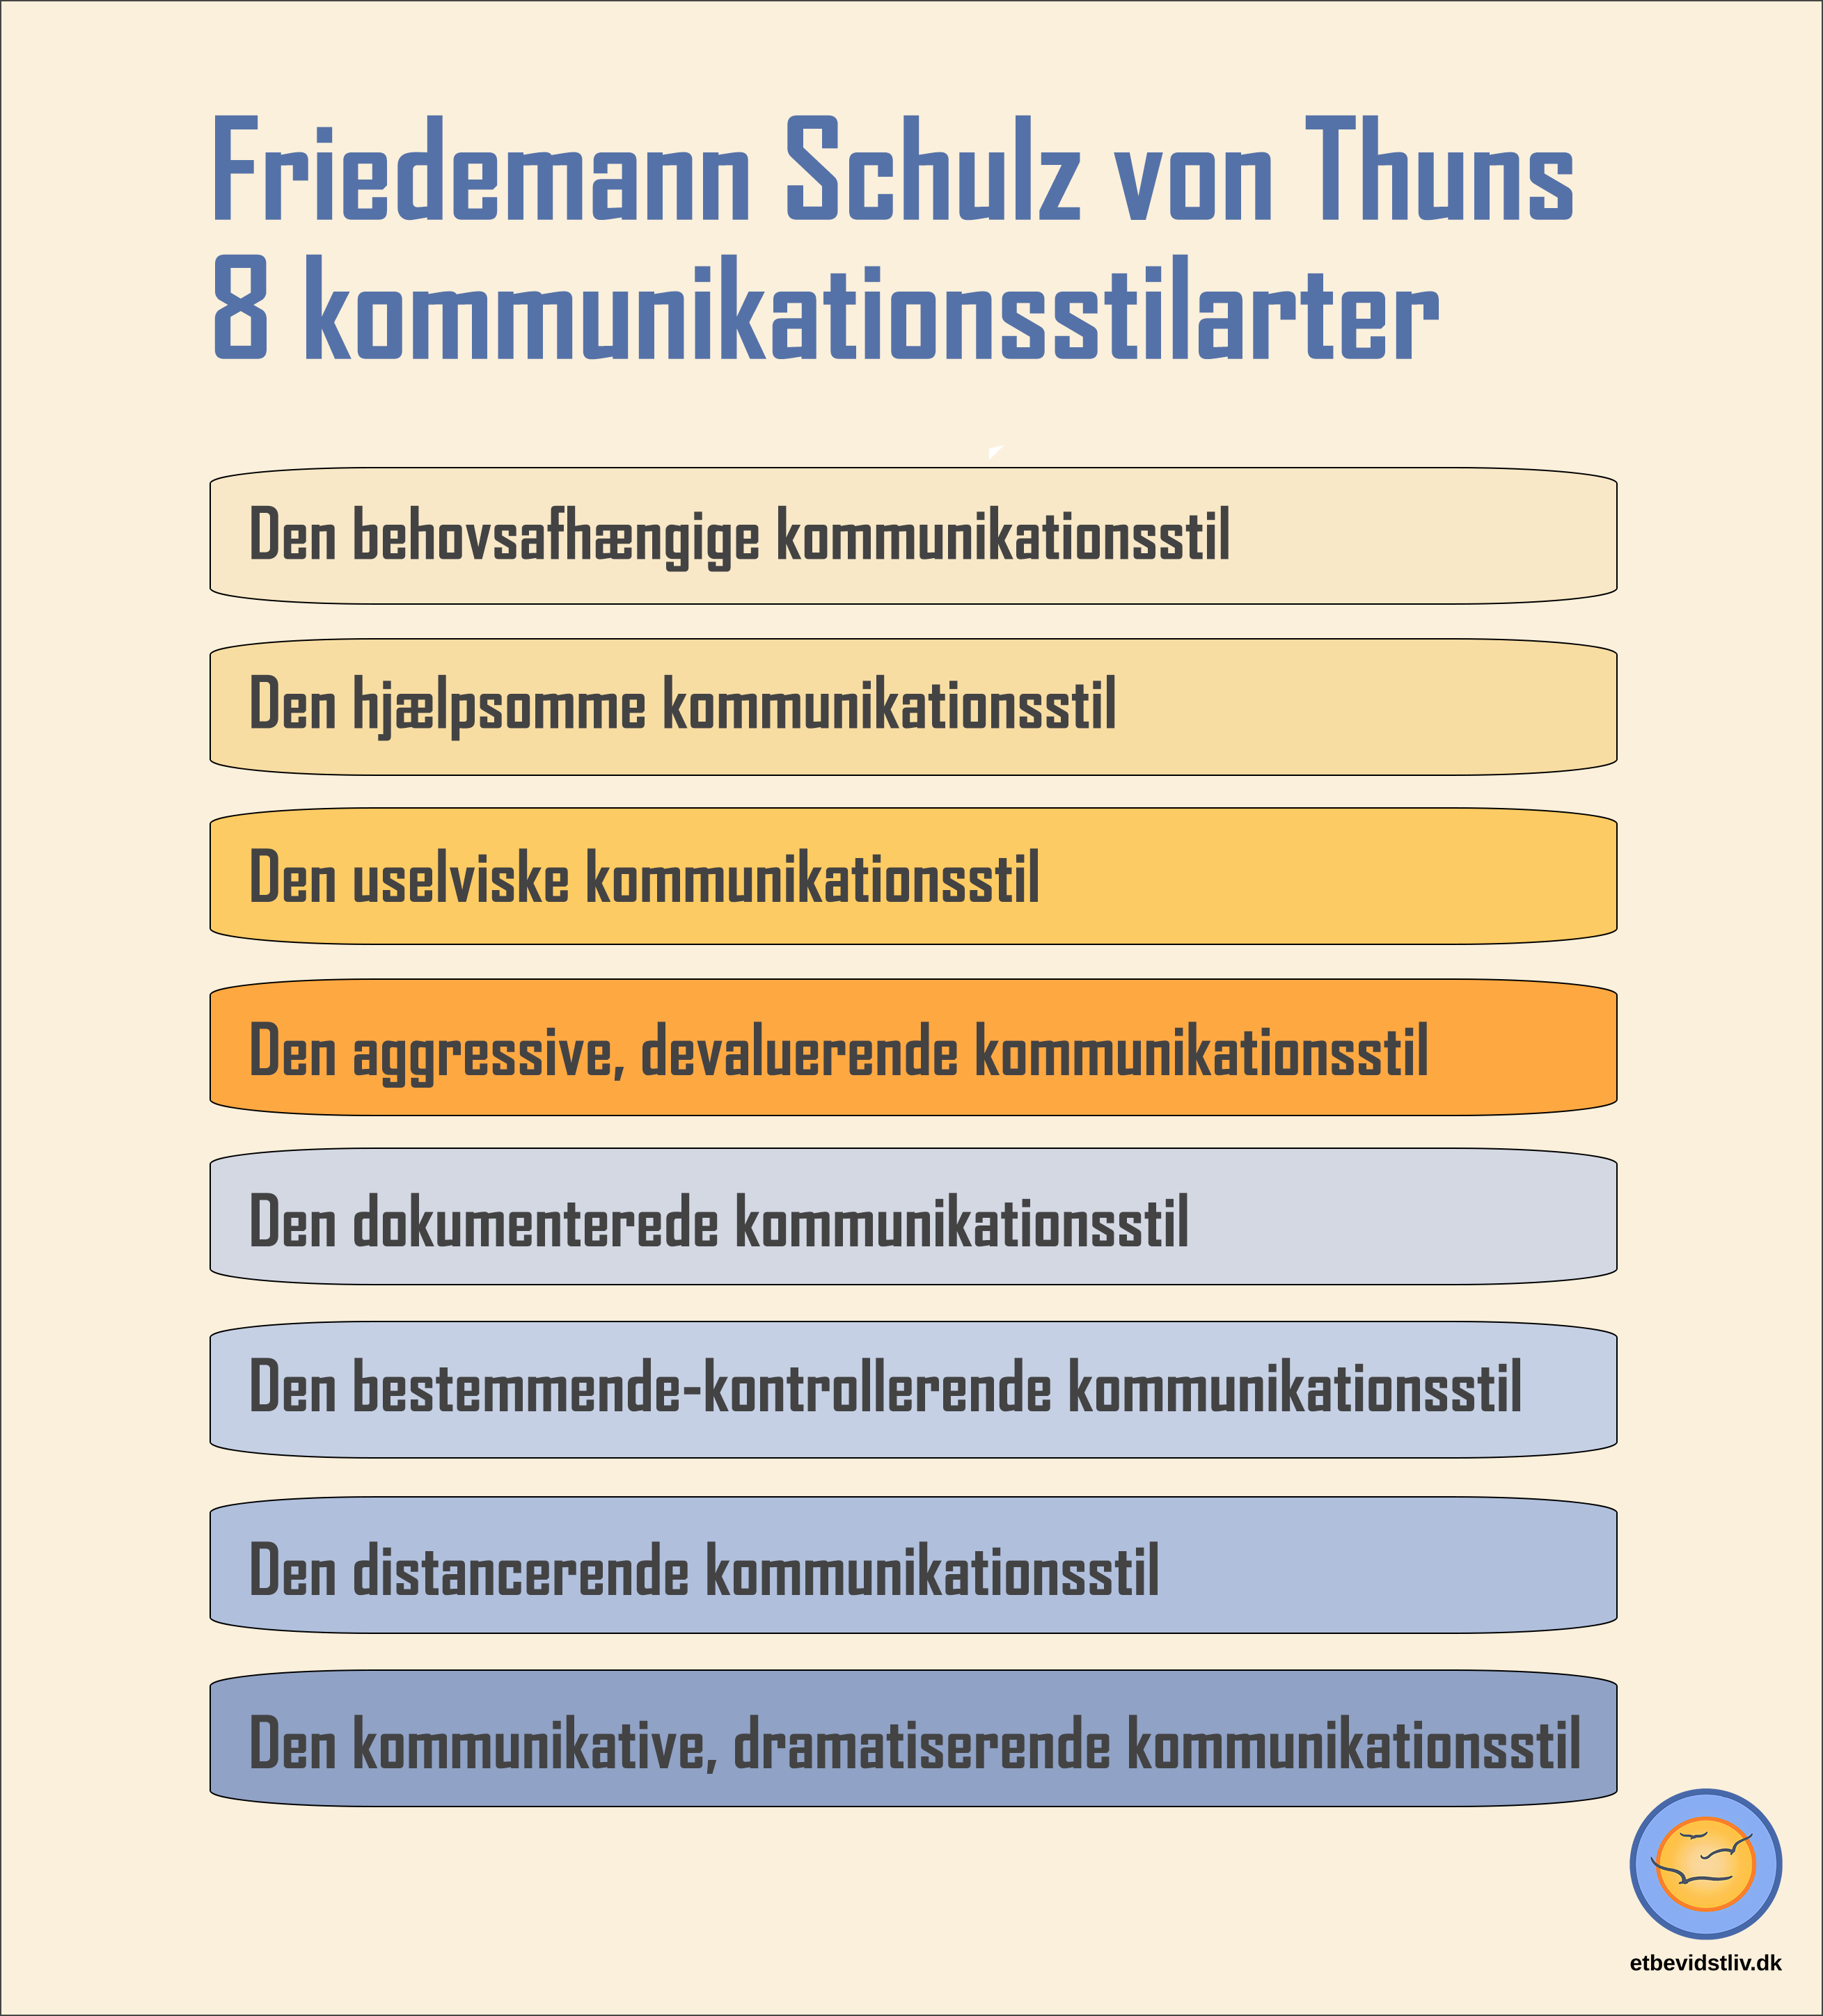 Model over Friedemann Schulz von Thuns 8 kommunikationsstilarter.